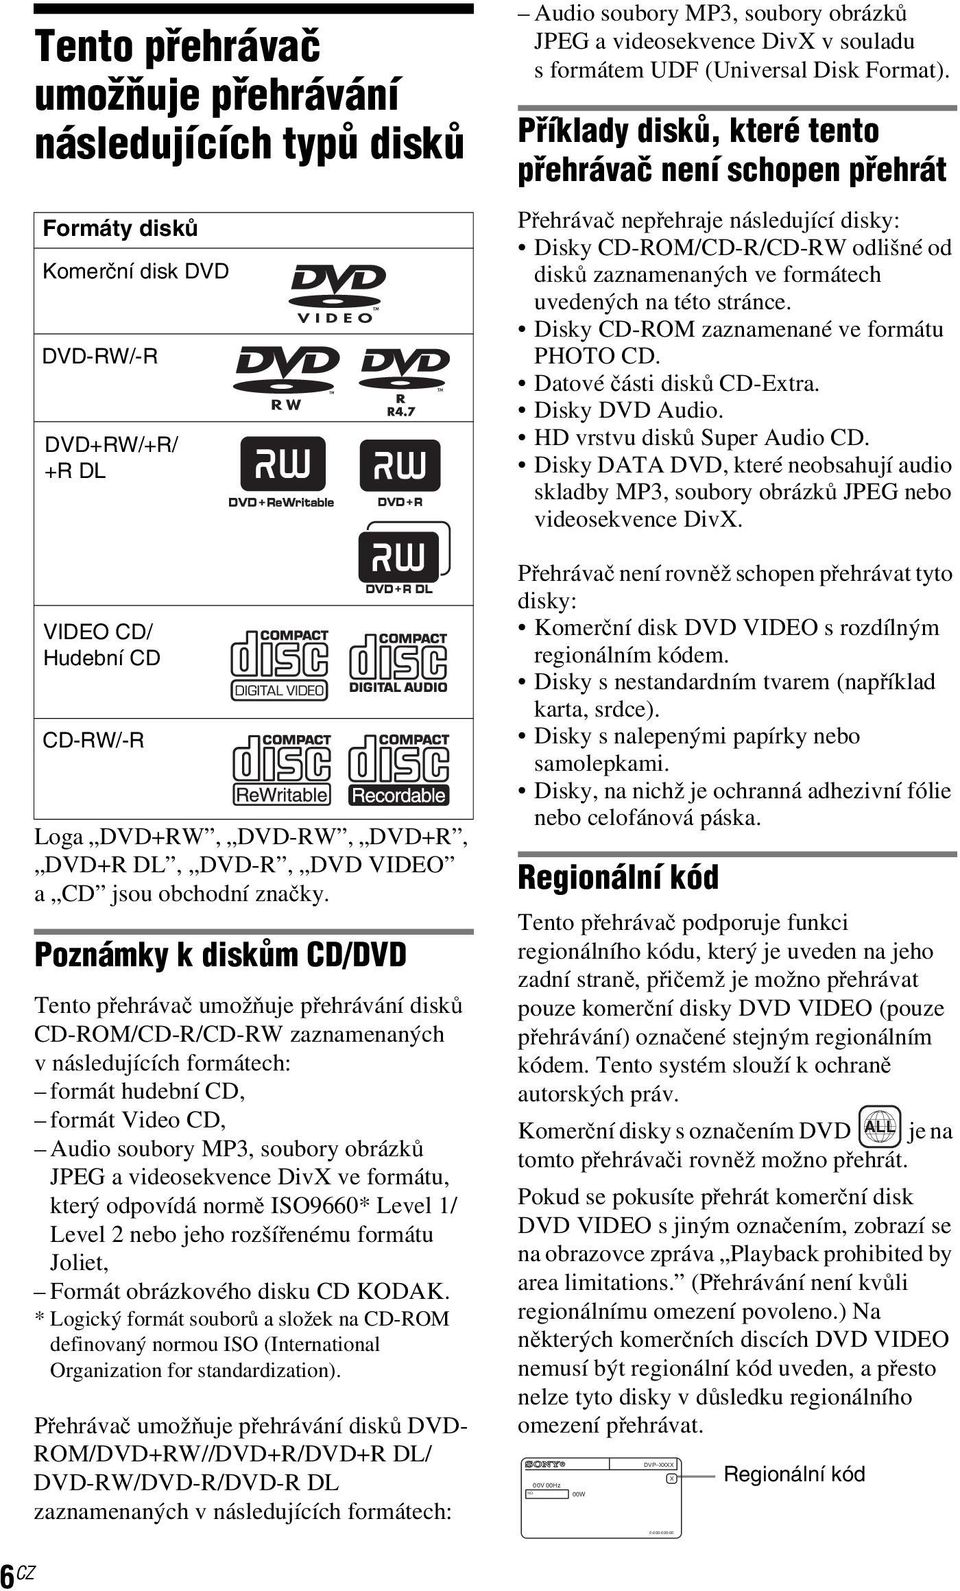 Poznámky k diskům CD/DVD Tento přehrávač umožňuje přehrávání disků CD-ROM/CD-R/CD-RW zaznamenaných v následujících formátech: formát hudební CD, formátvideocd, Audio soubory MP3, soubory obrázků JPEG